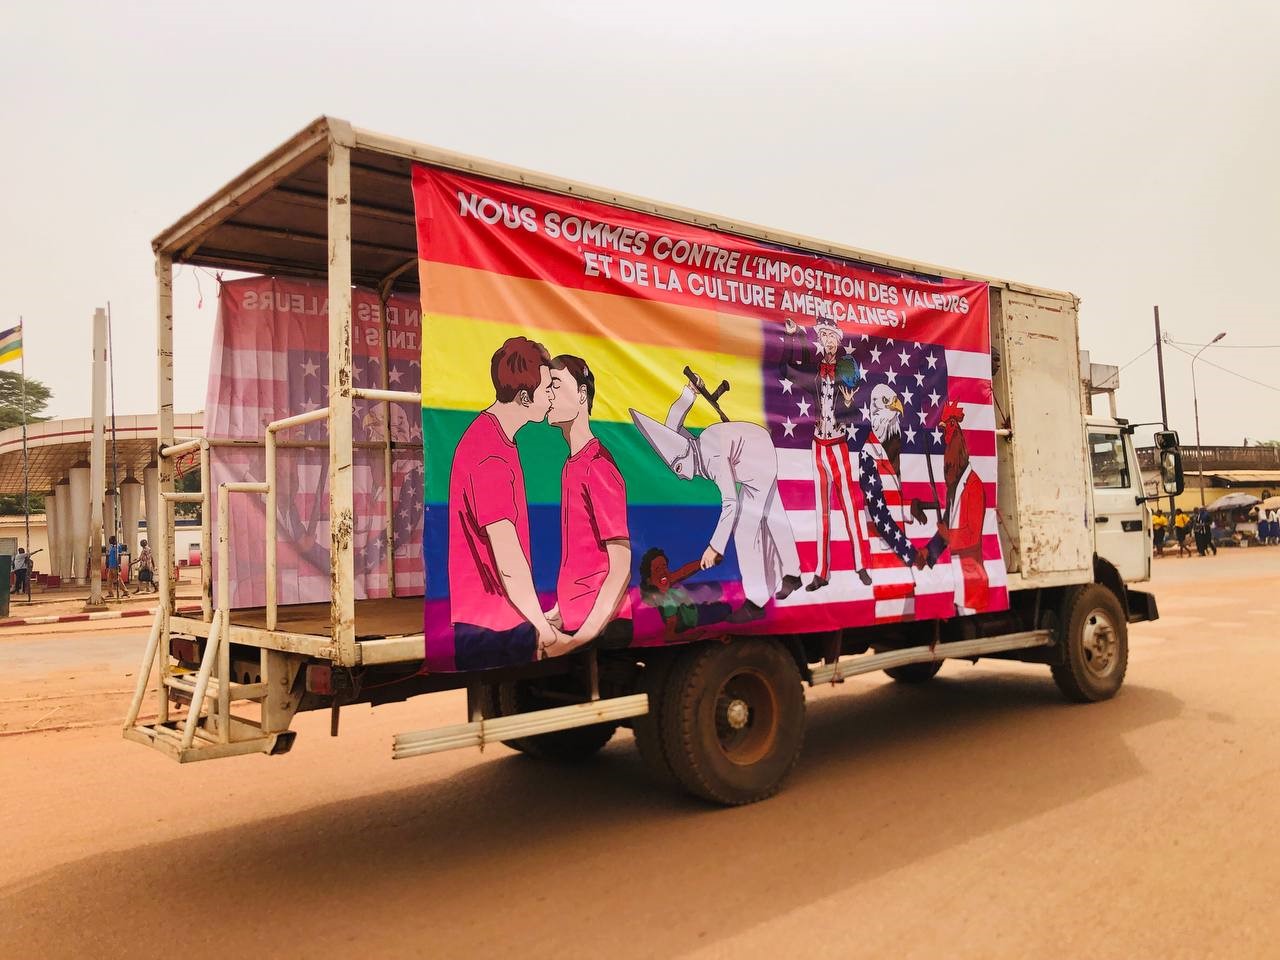 Une action contre l’imposition des valeurs américaines a eu lieu à Bangui